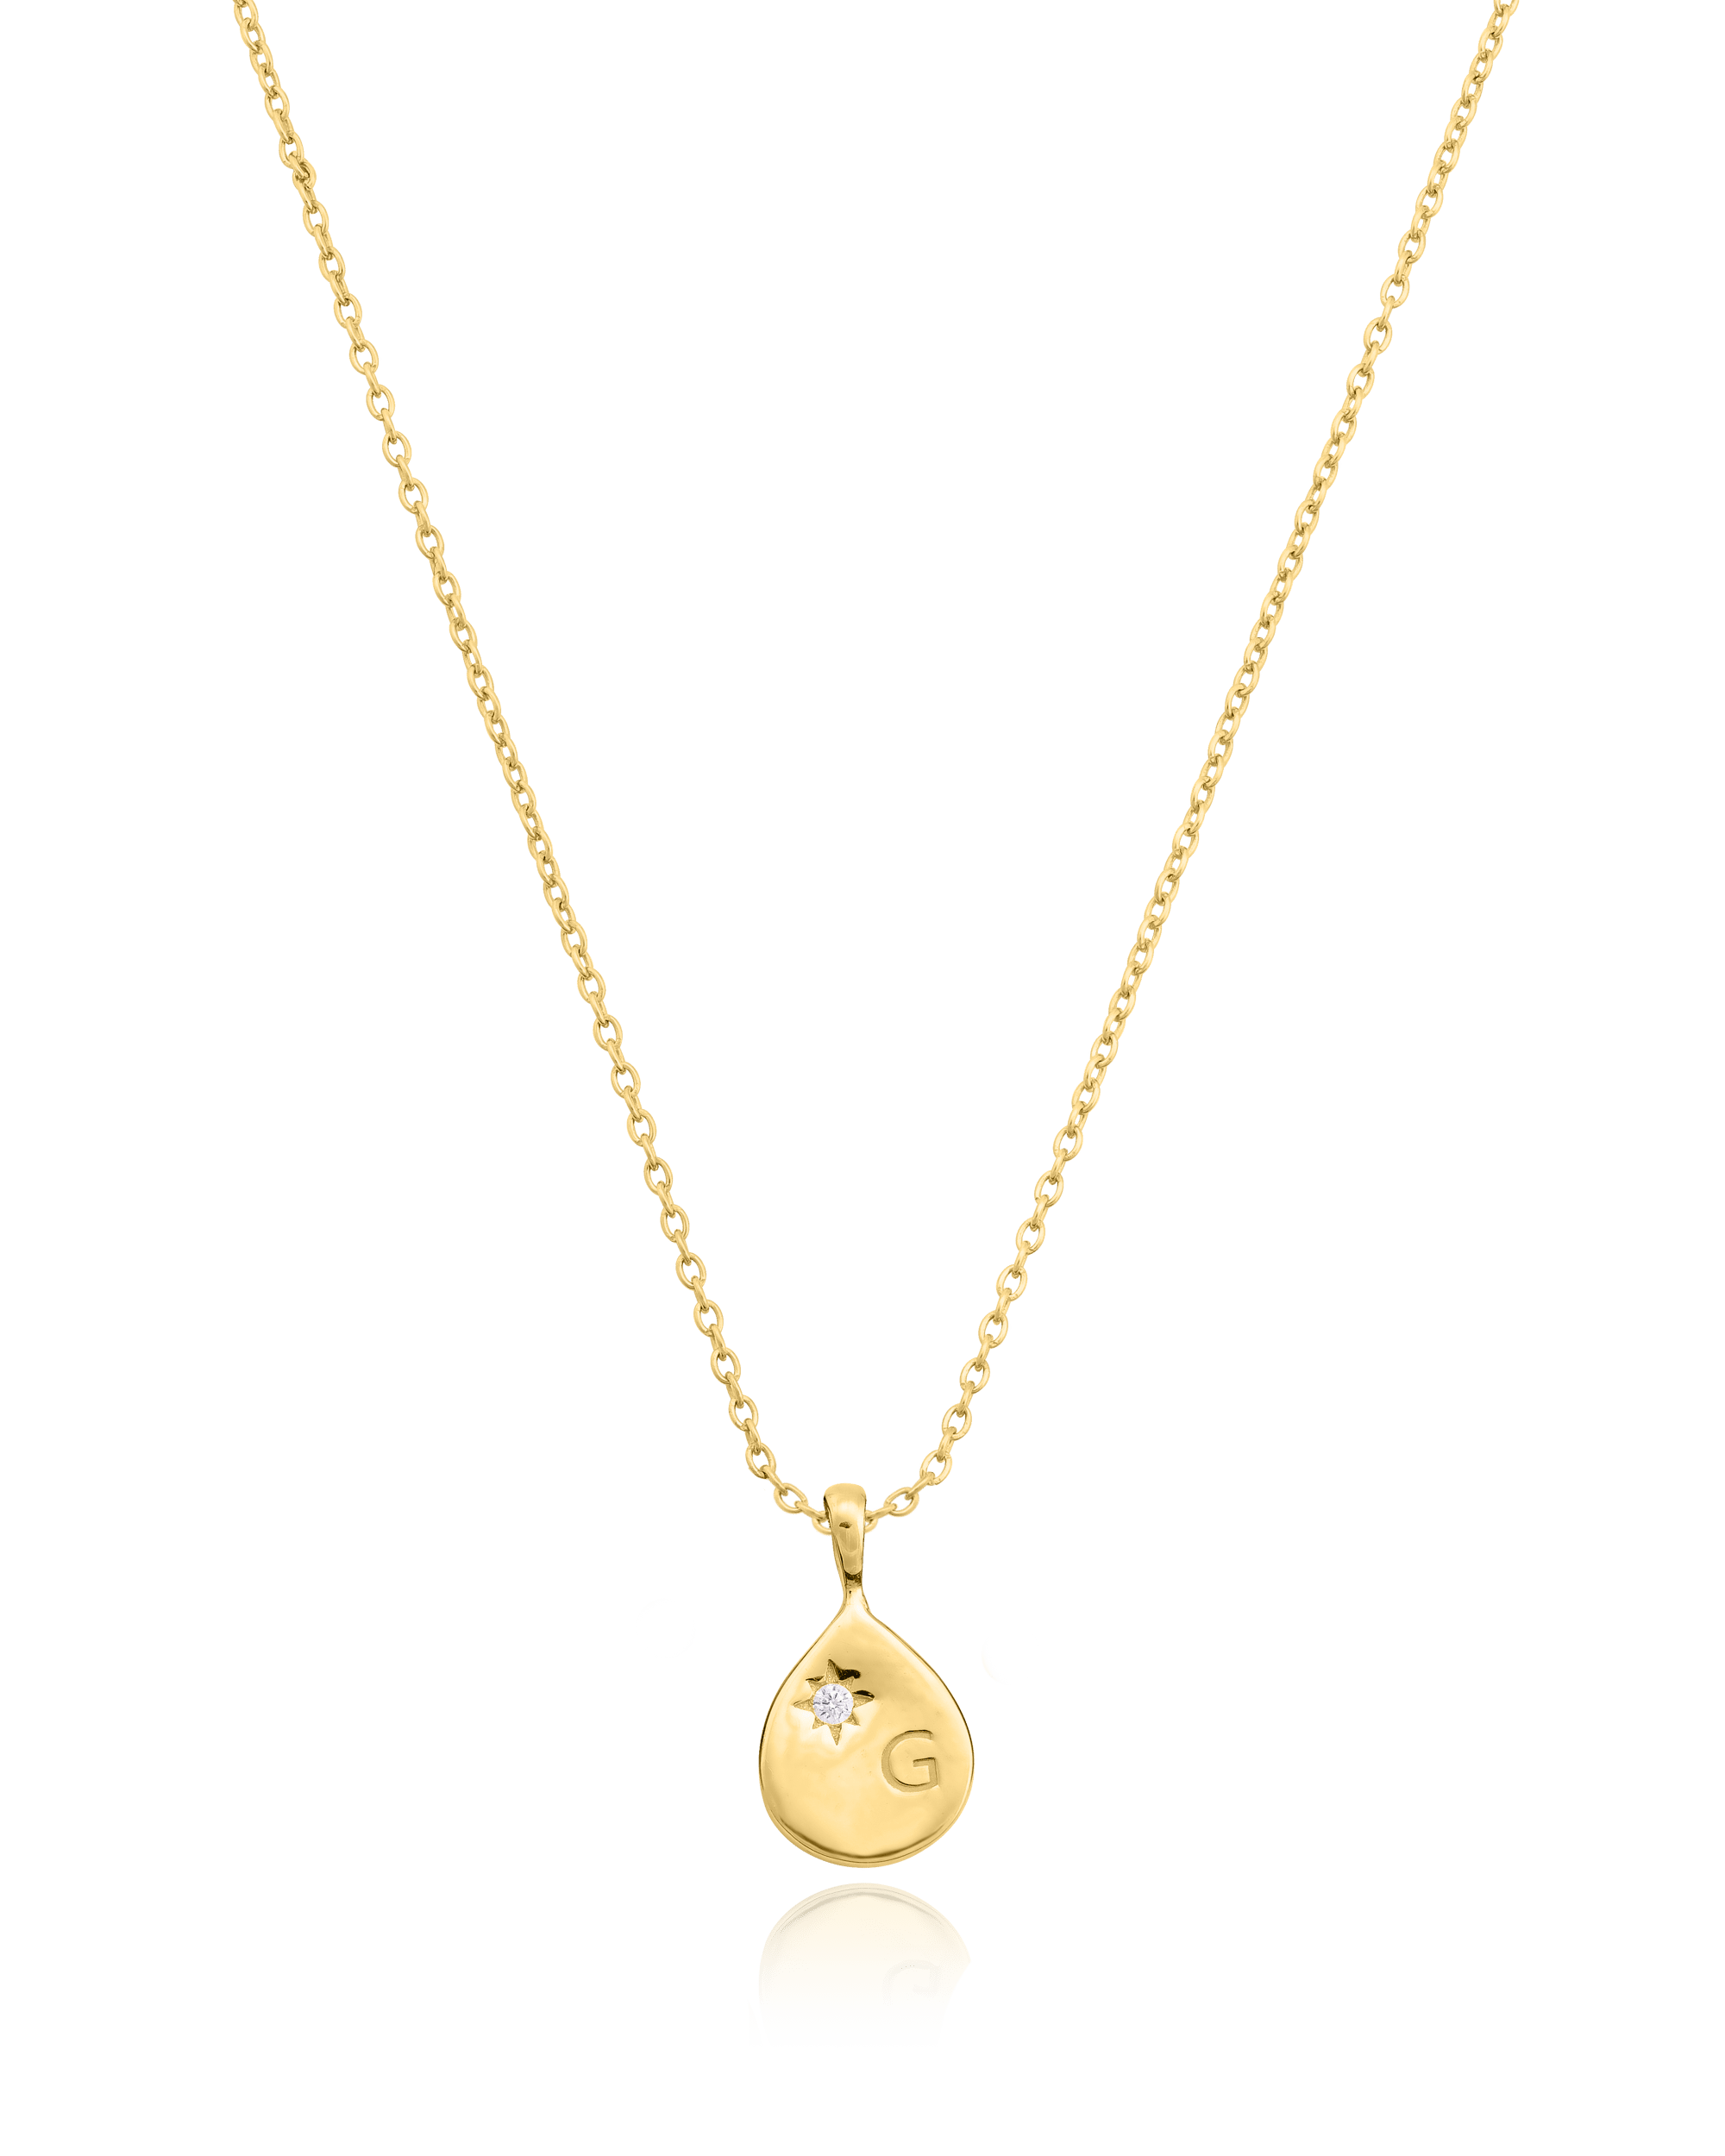 Diamond Drop Initial Necklace - 18K Gold Vermeil Necklaces magal-dev 1 Drop 16”+2” extender 